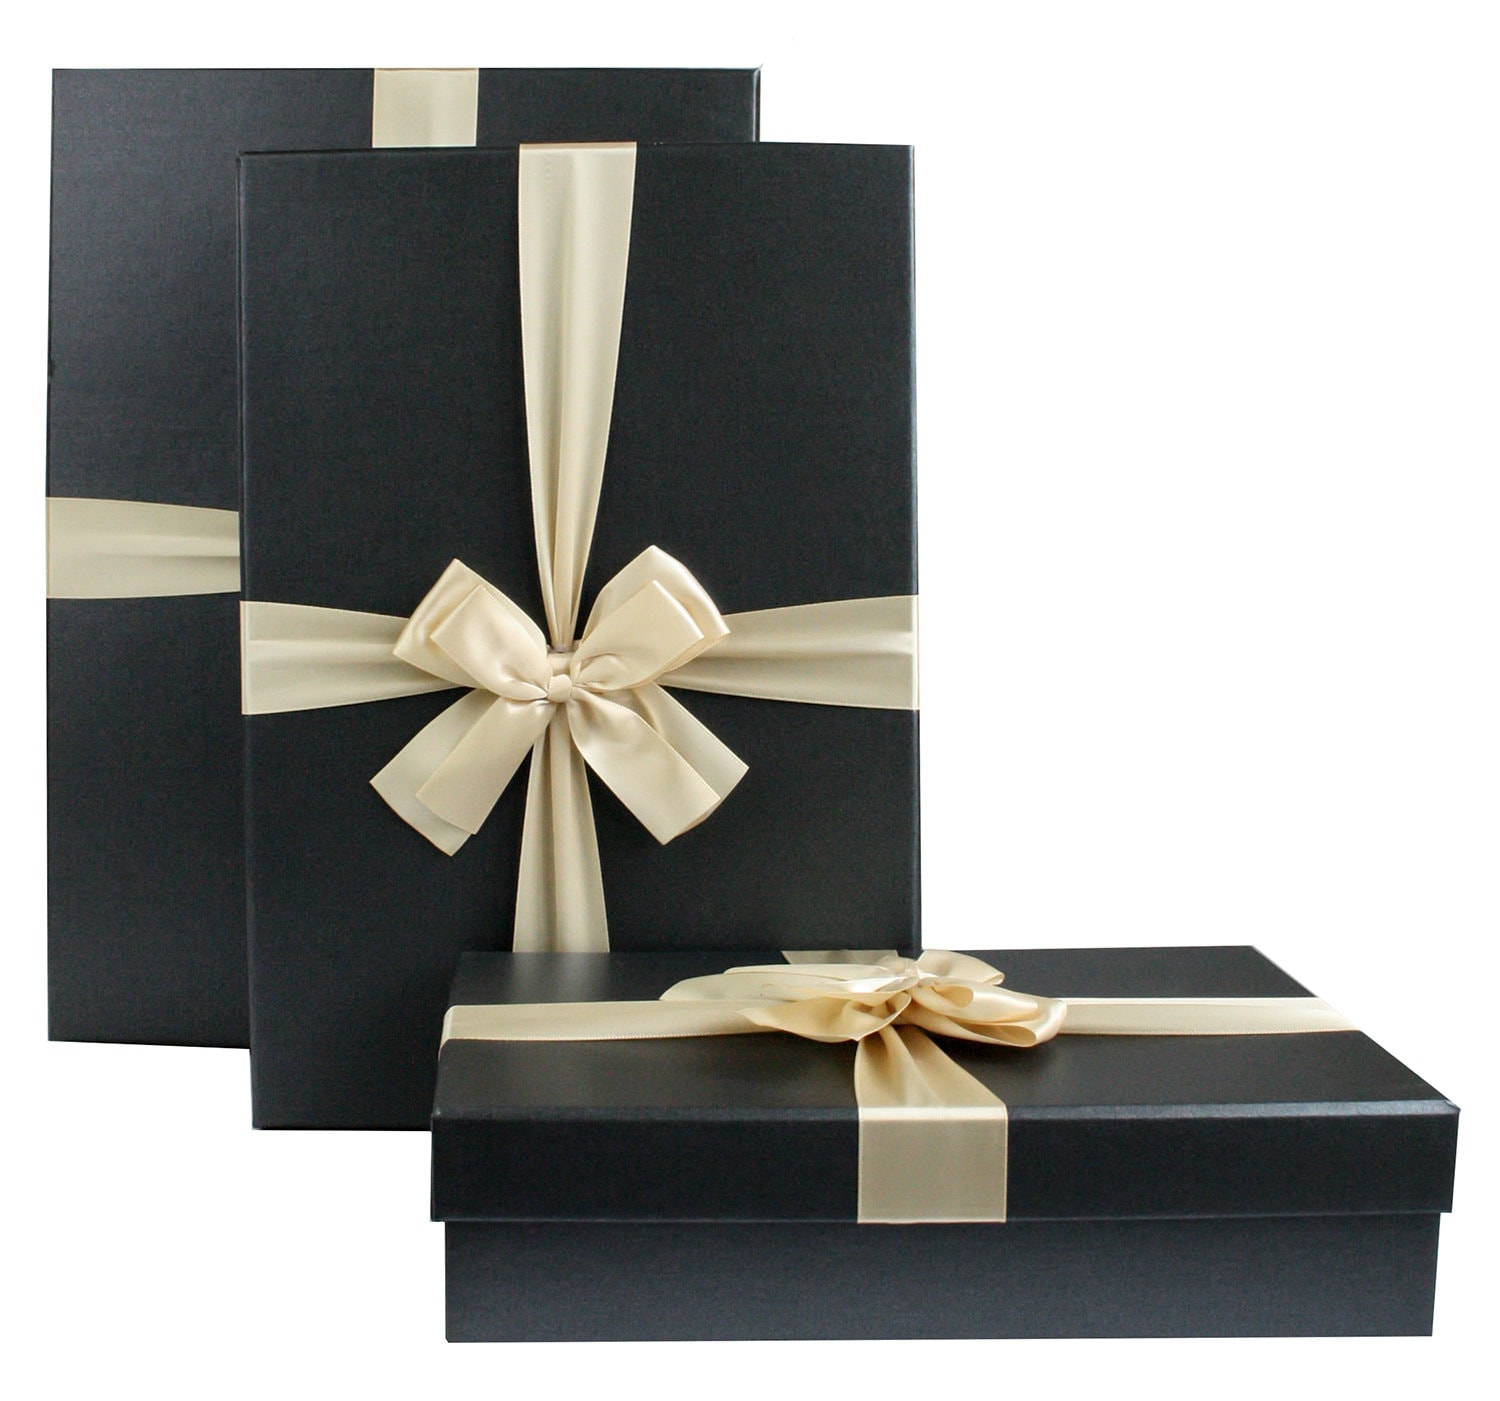 3 x 3 x 3 cajas transparentes, cajas de favores de boda, caja de regalo, ver